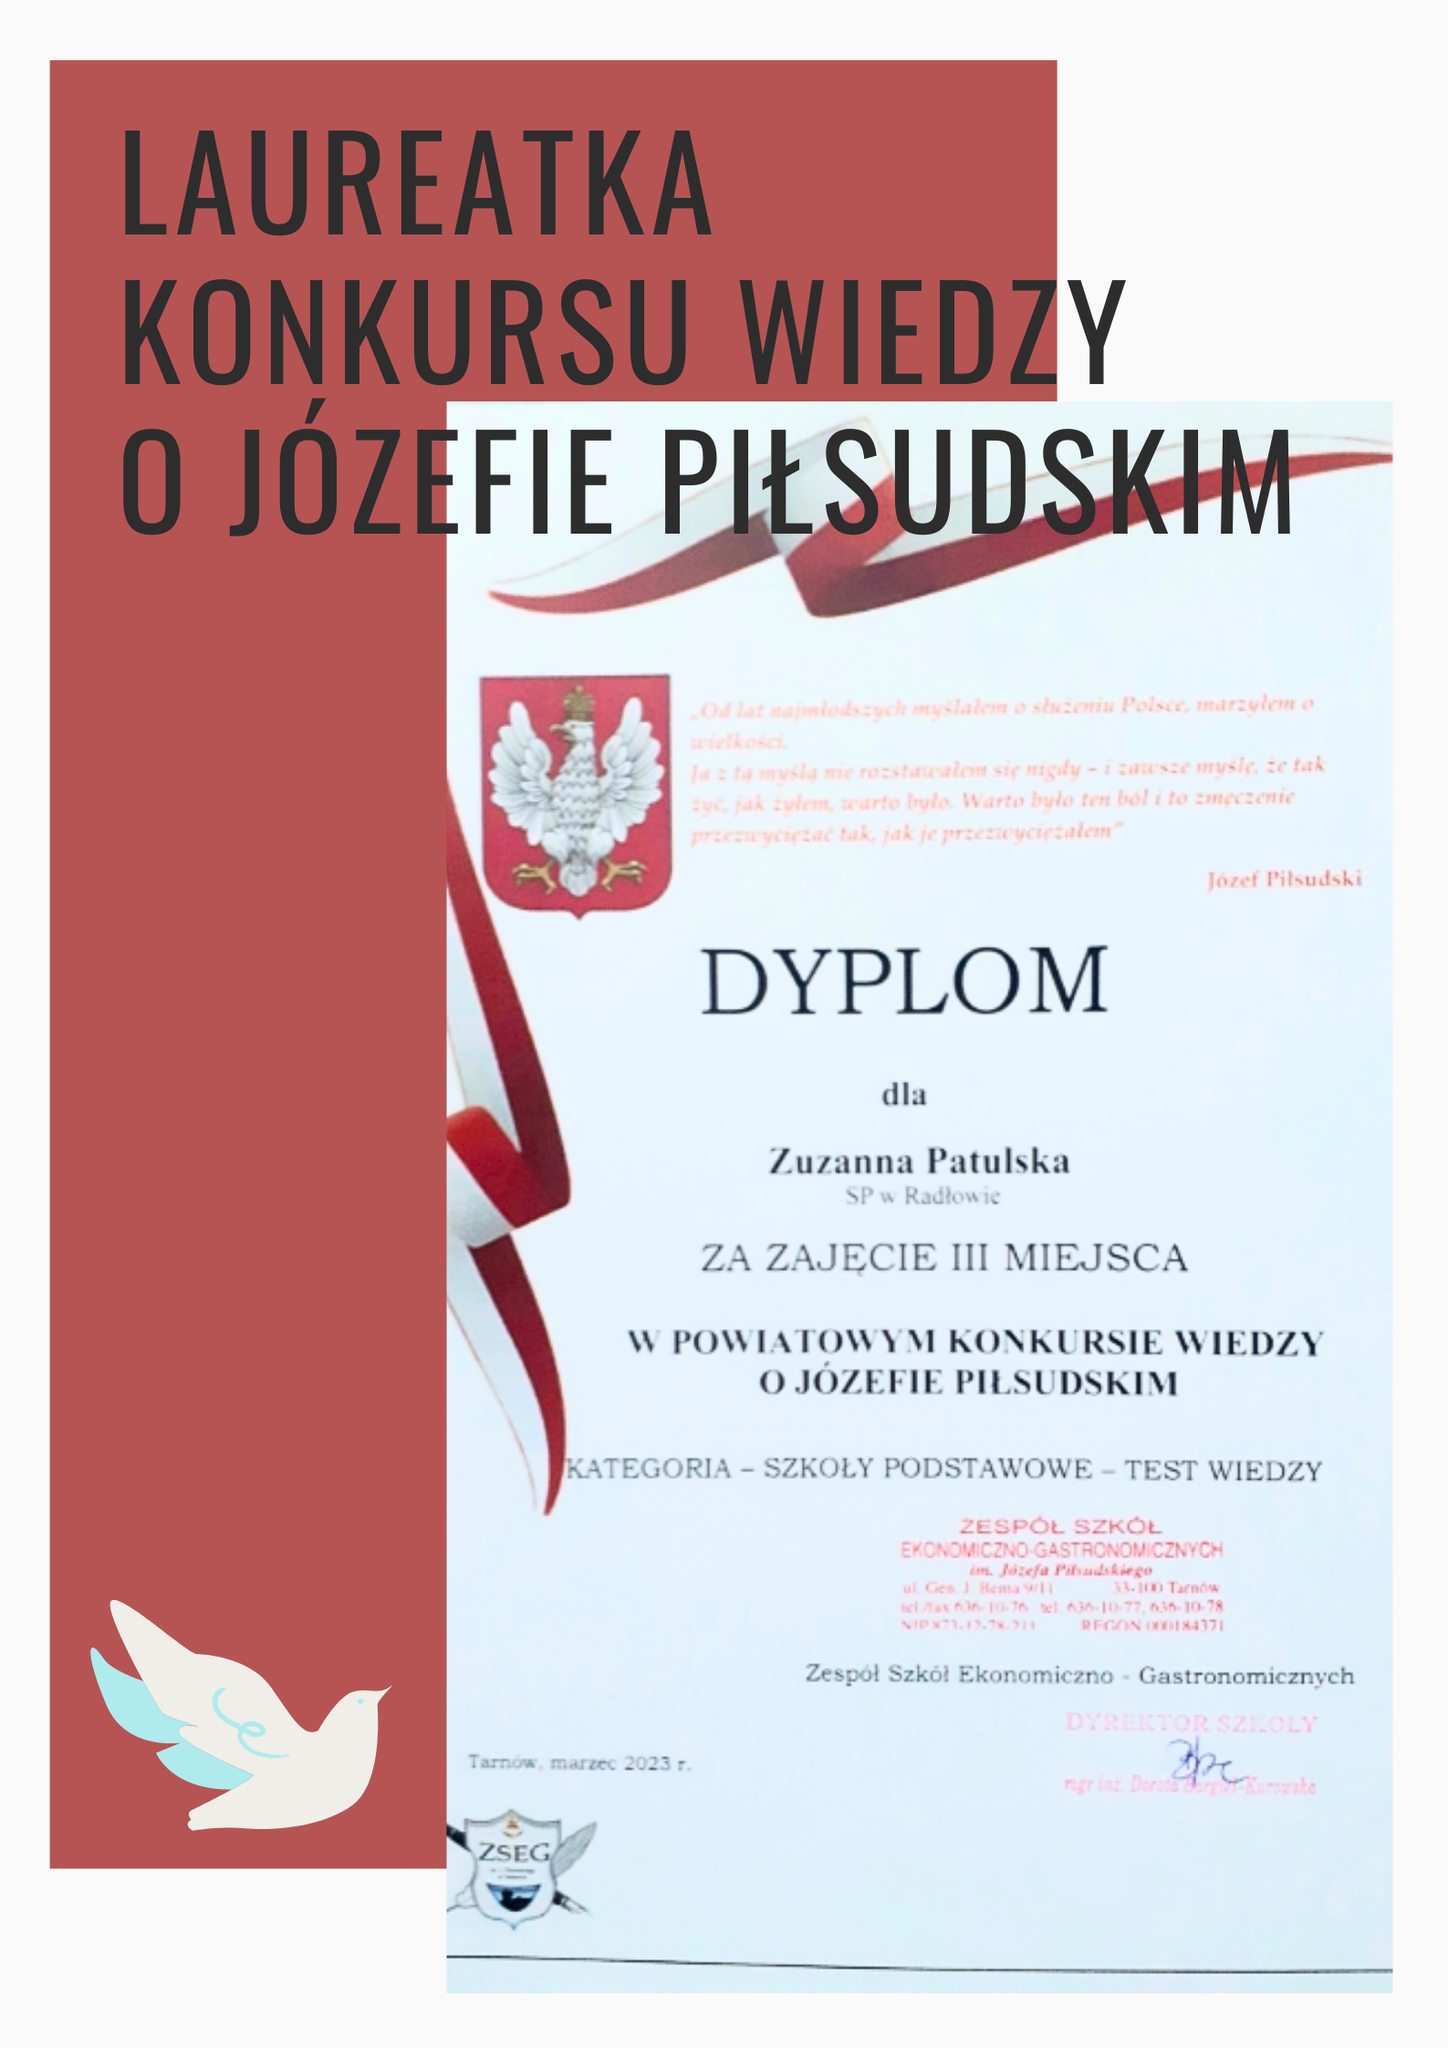 IX Powiatowy Konkursu Wiedzy o Józefie Piłsudskim